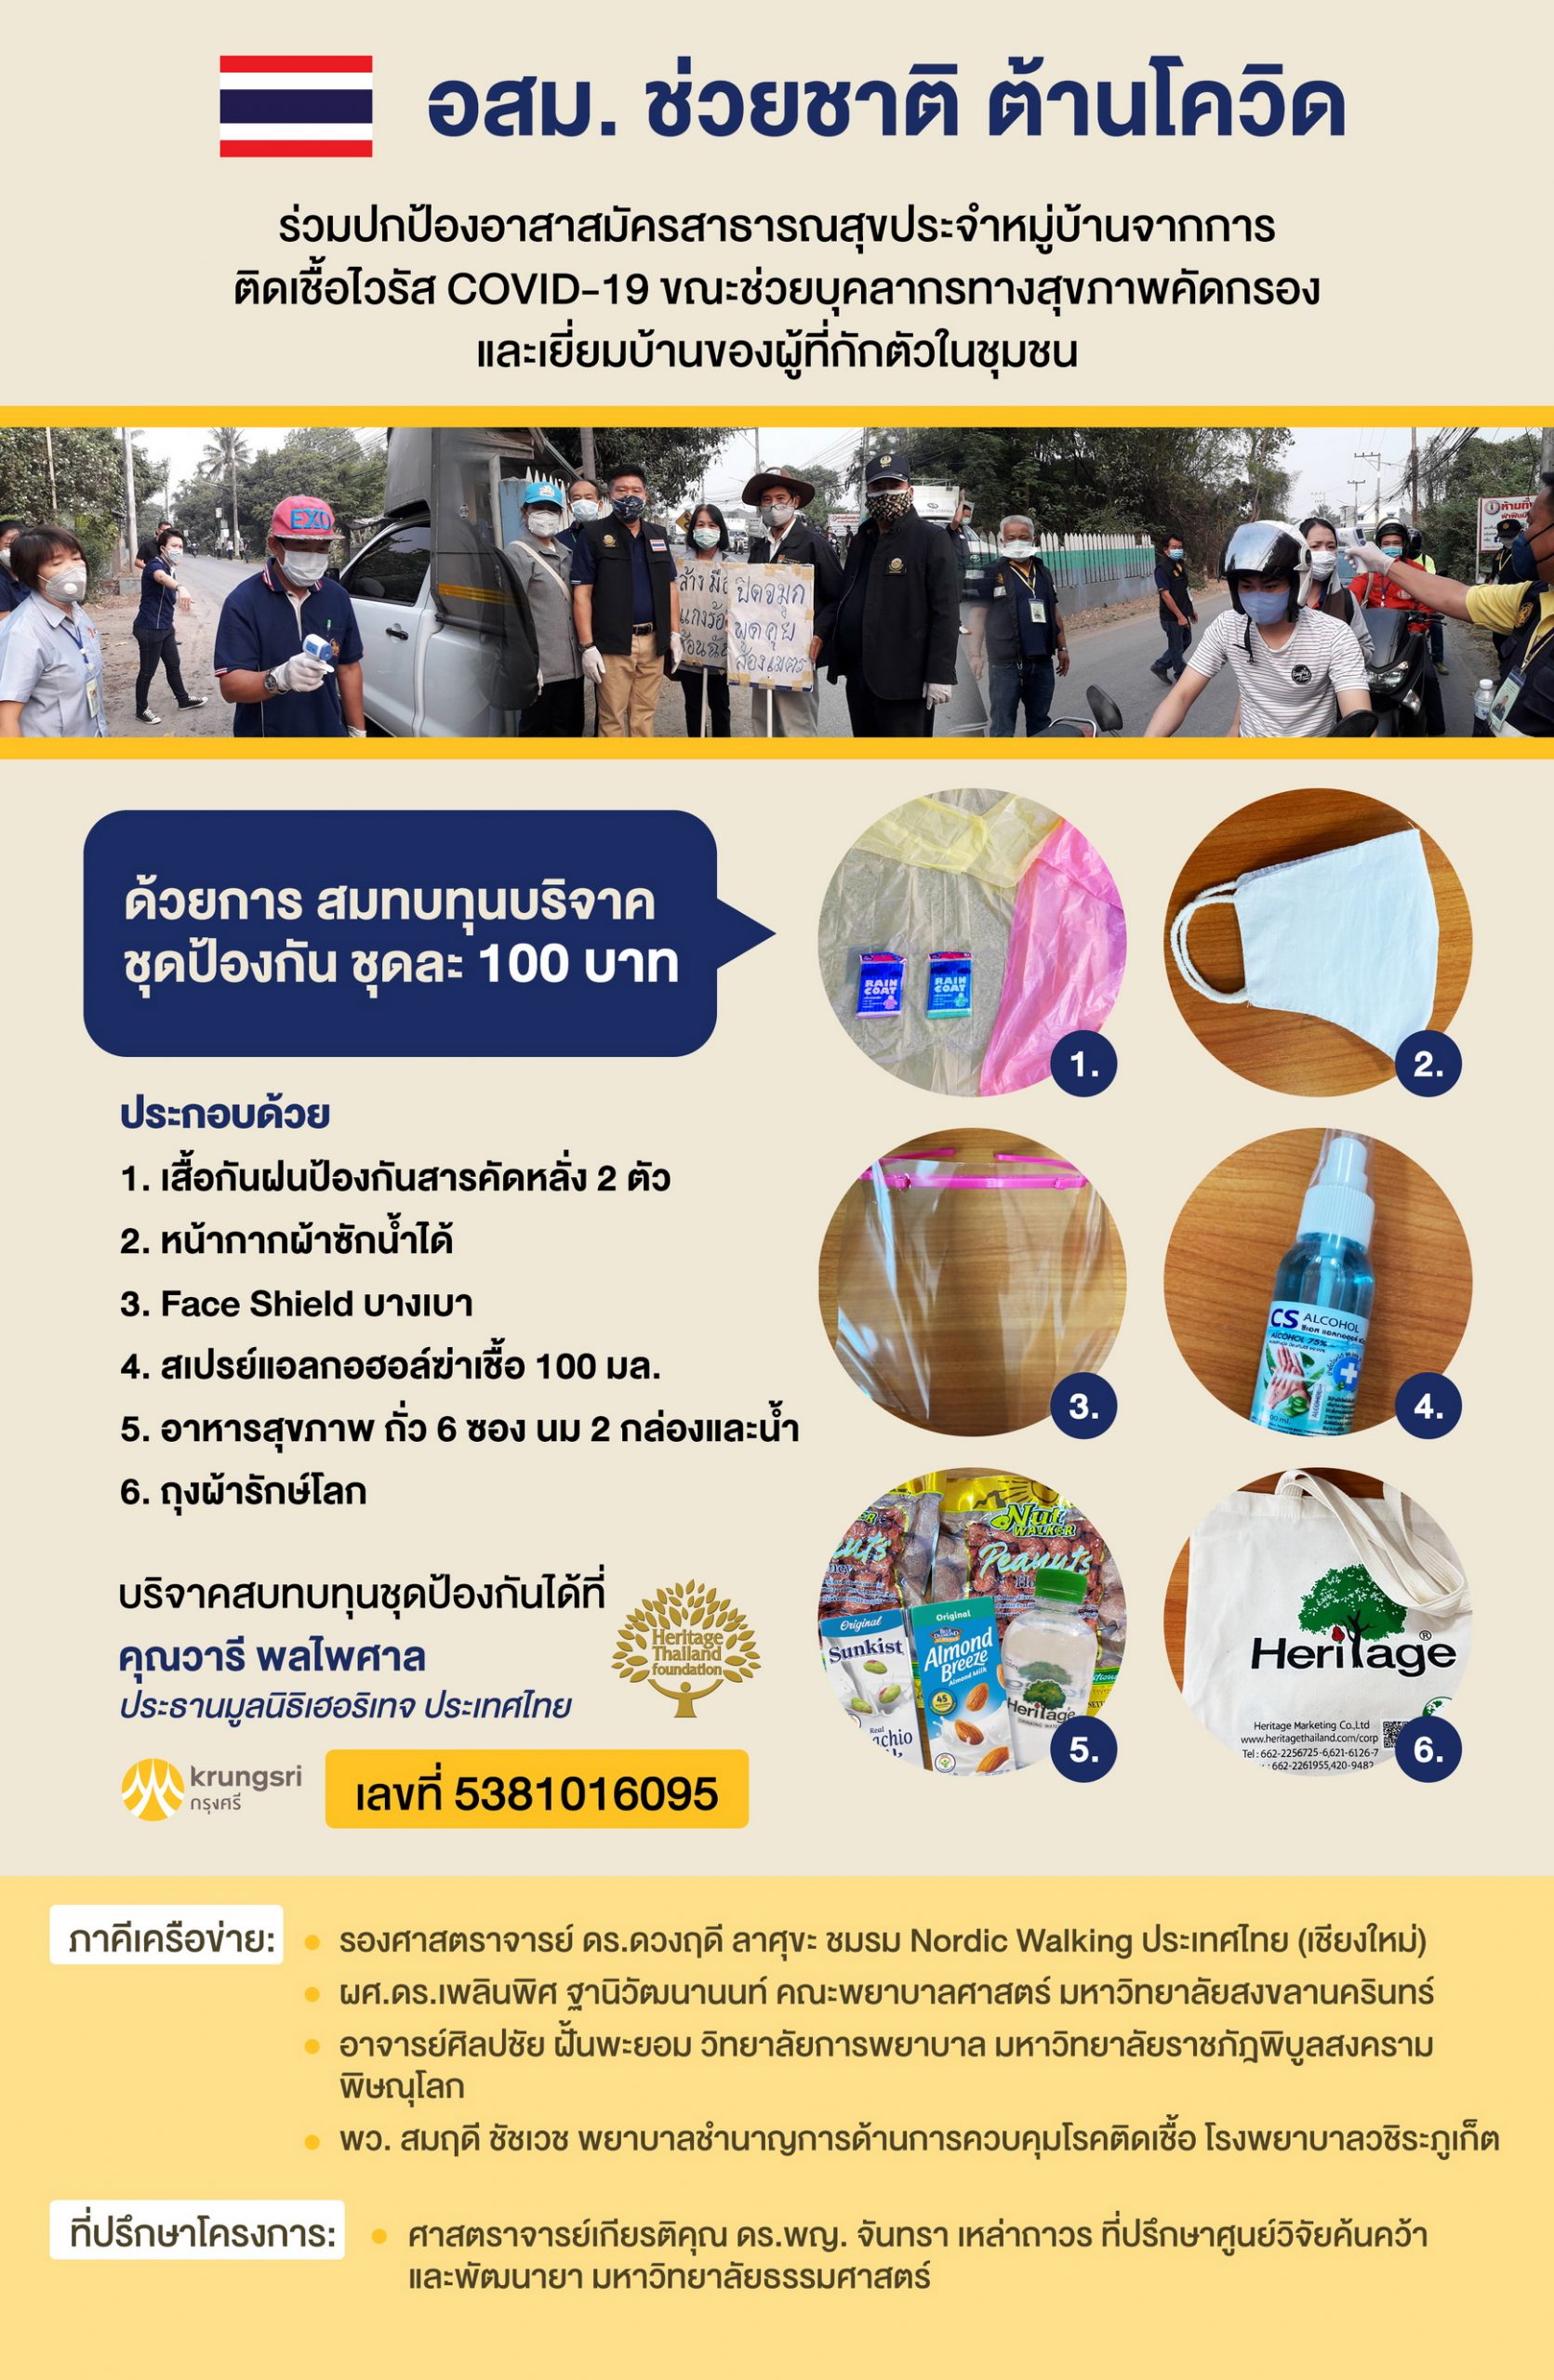 มูลนิธิเฮอริเทจประเทศไทย ร่วมกับภาคีเครือข่ายจัดทำโครงการ อสม.ช่วยชาติ ต้านโควิด ส่งมอบชุดป้องกันช่วยเหลืออาสาสมัครสาธารณสุข